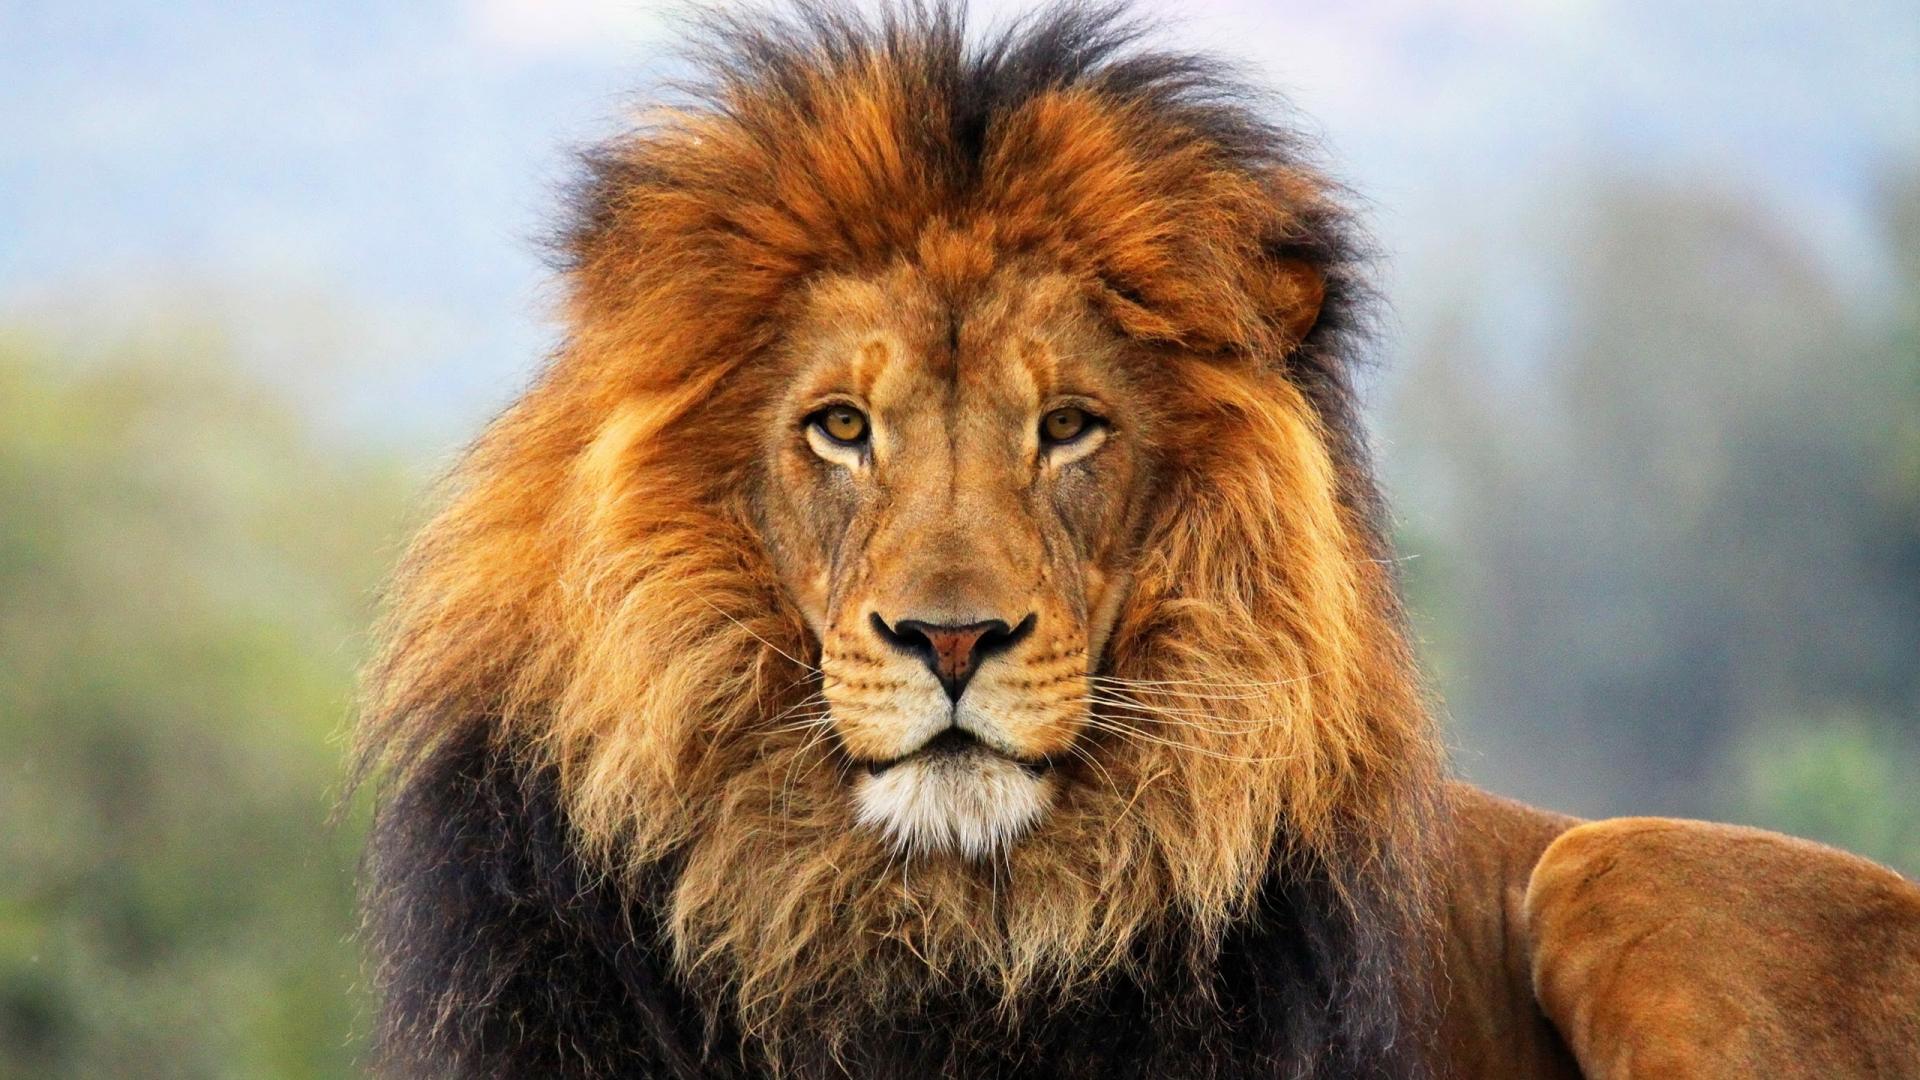 ライオン壁紙hd 1080p,ライオン,野生動物,ヘア,陸生動物,マサイライオン